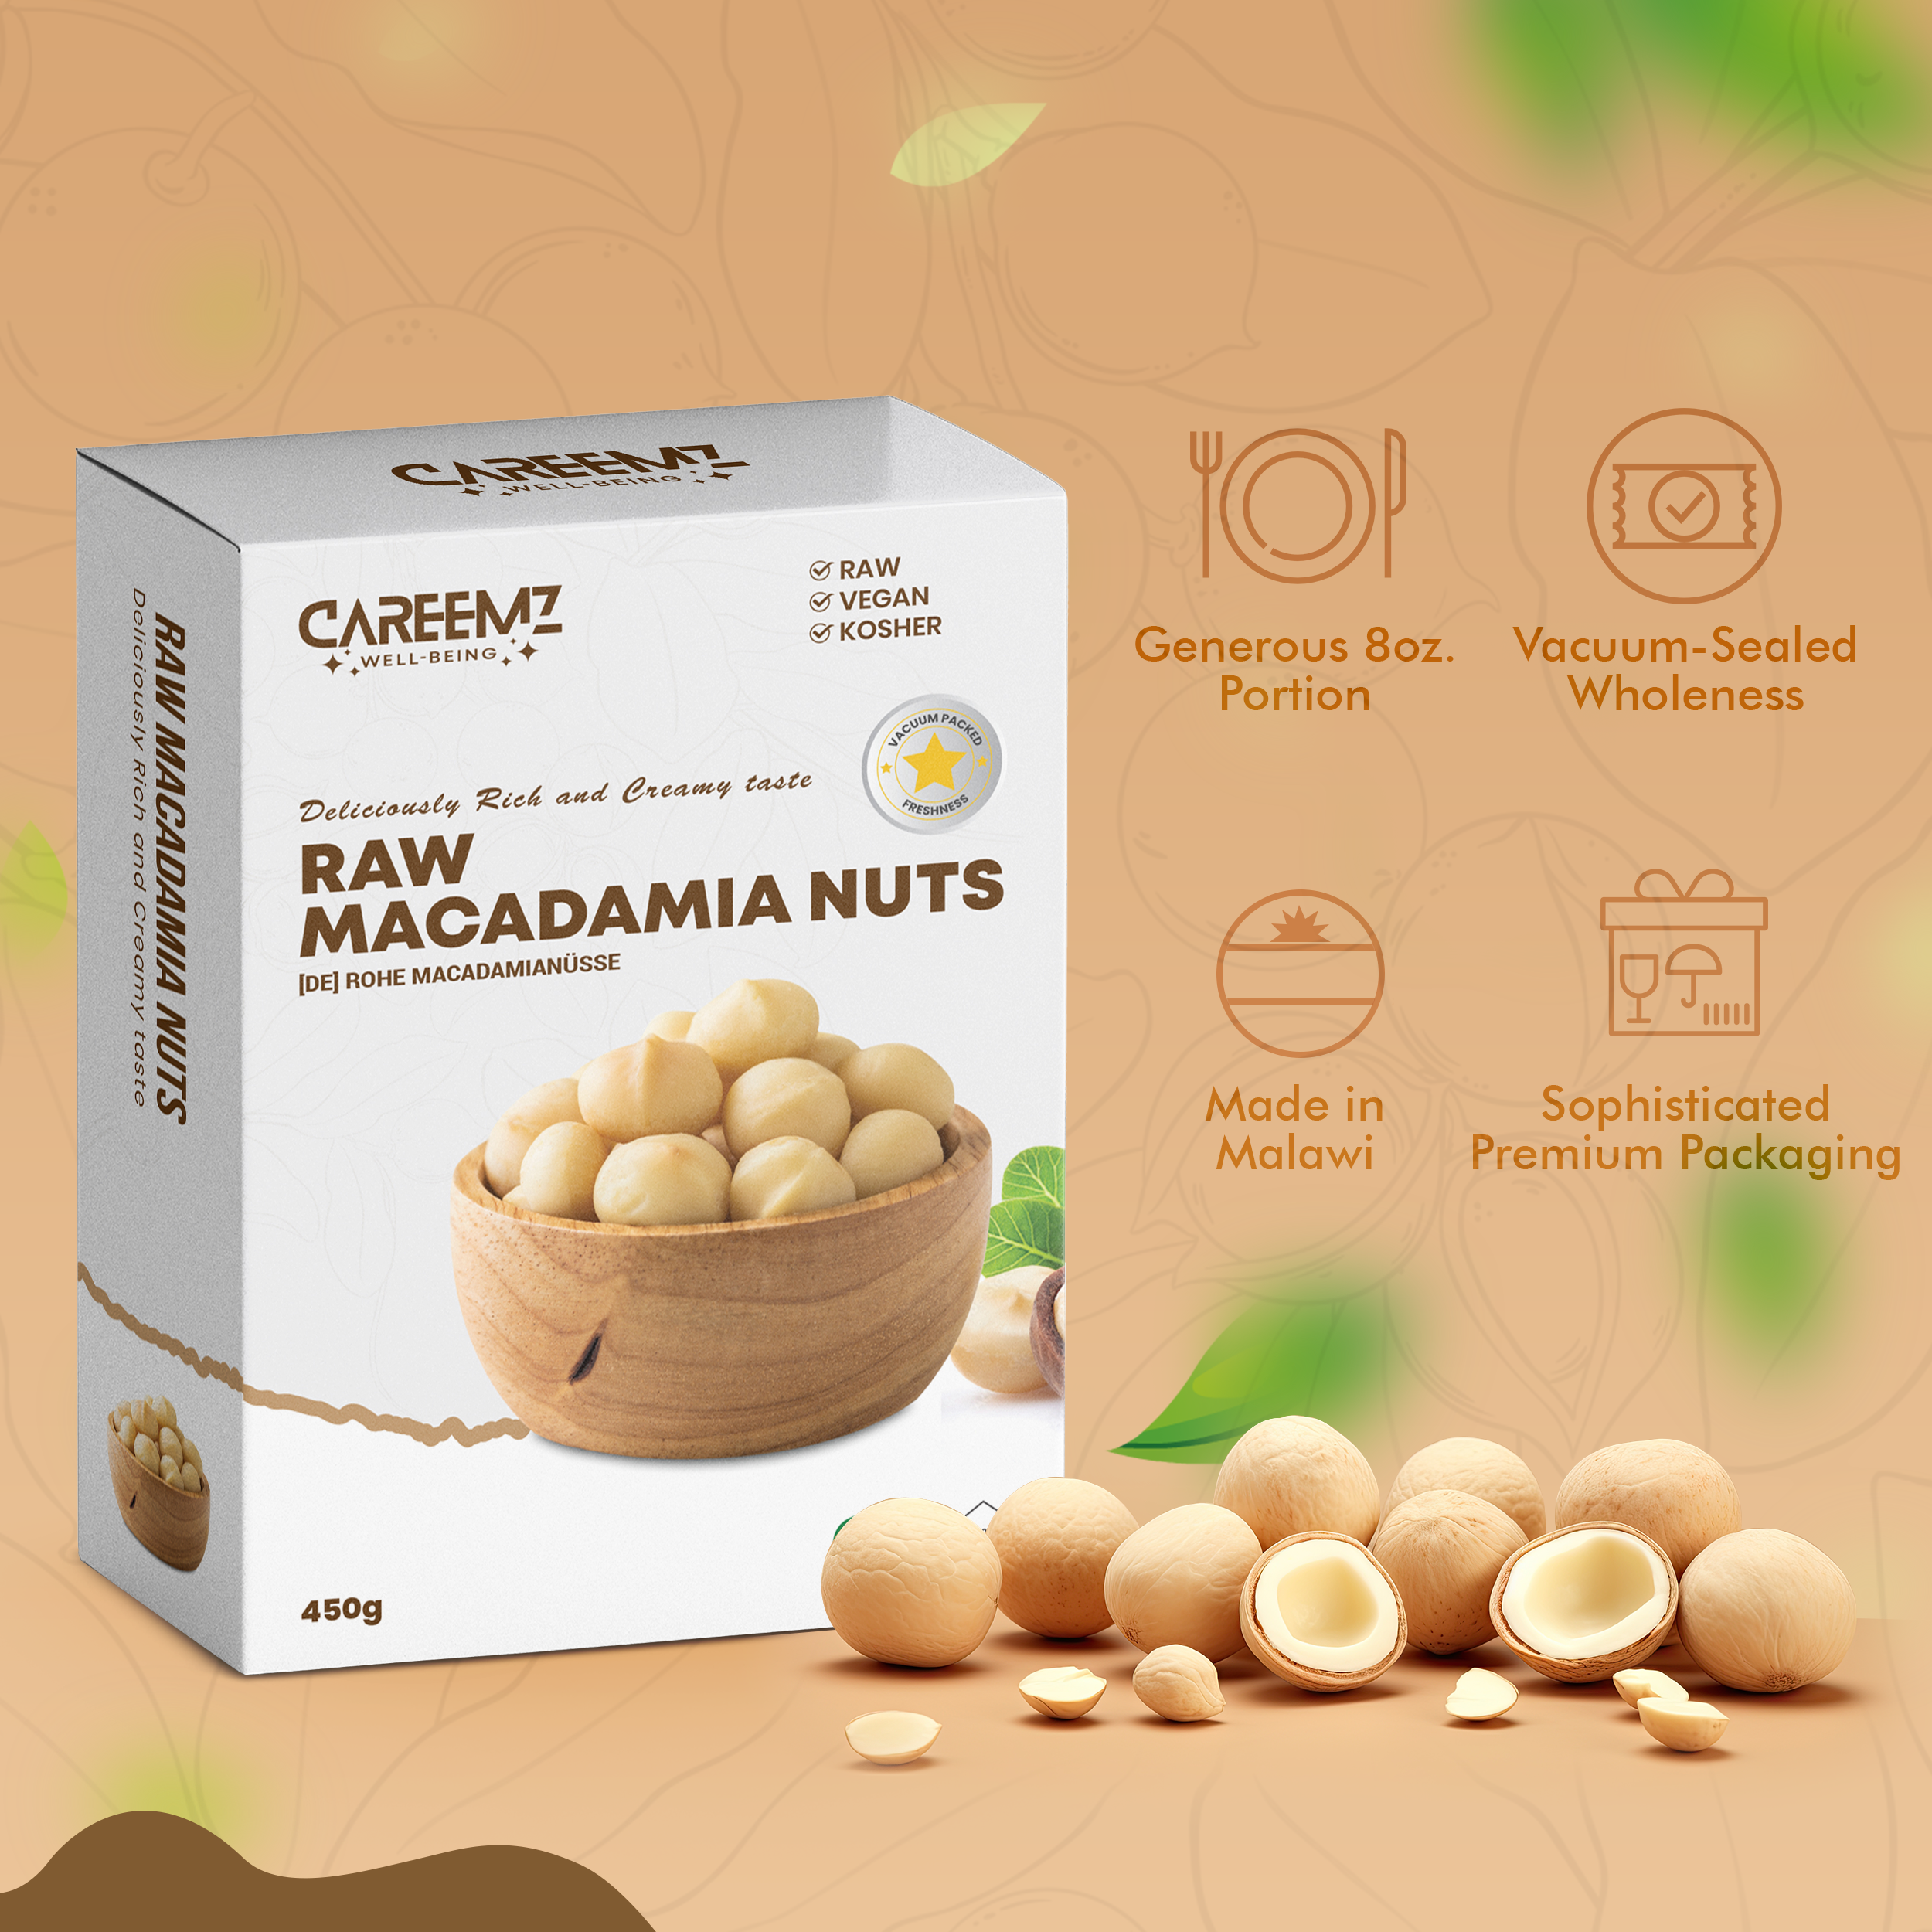 CAREEMZ Raw Macadamia Nuts